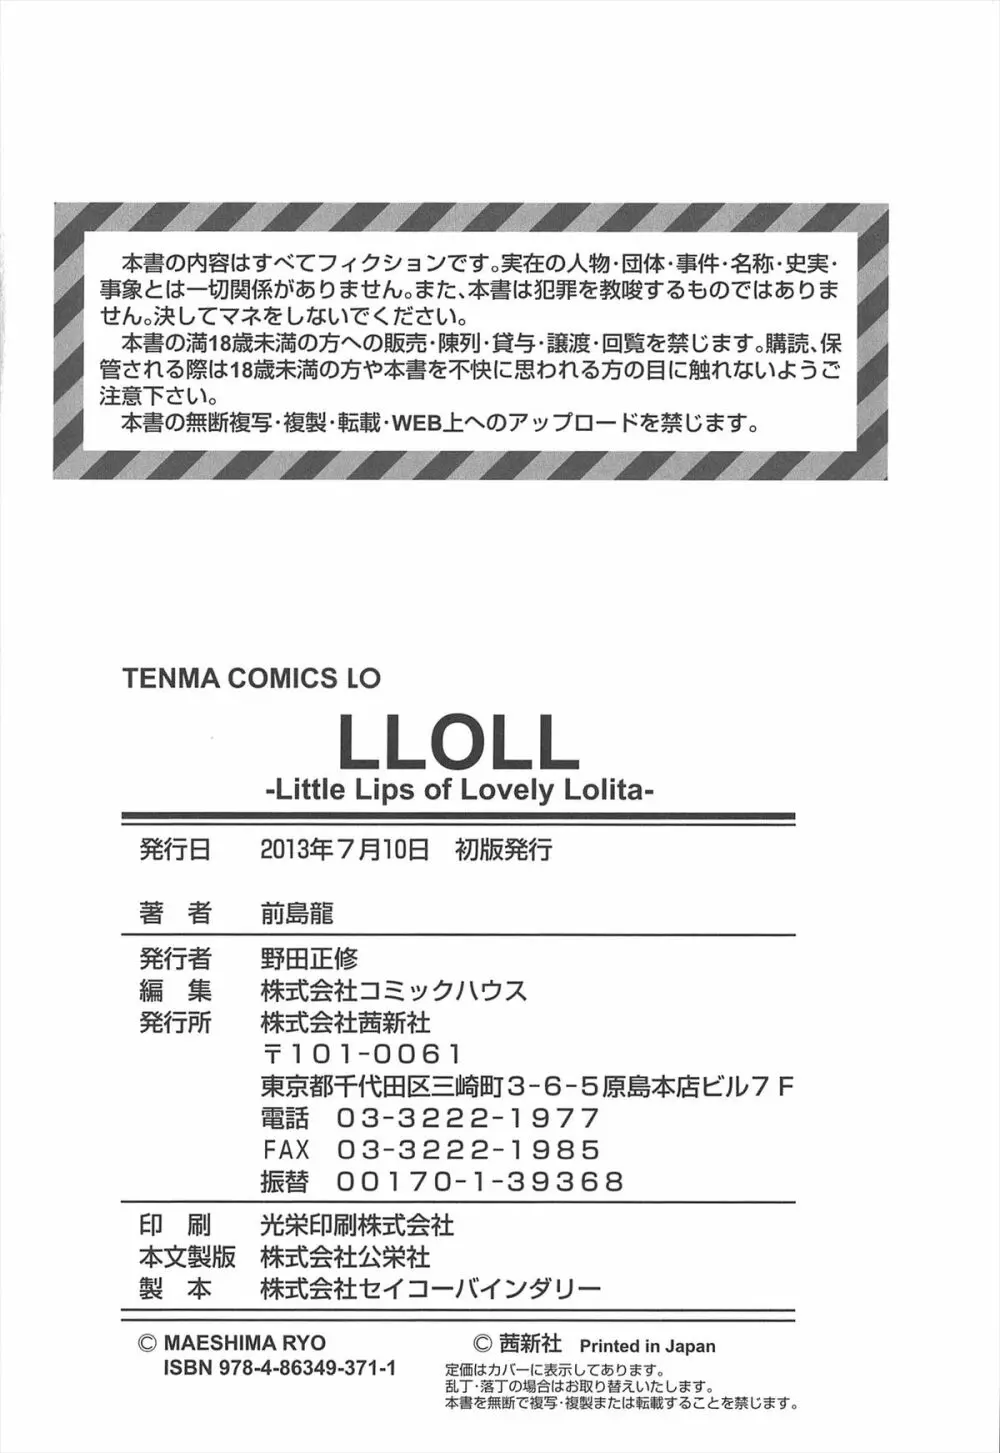 [前島龍] LLOLL -Little Lips of Lovely Lolita- メロンブックス特典付き 225ページ